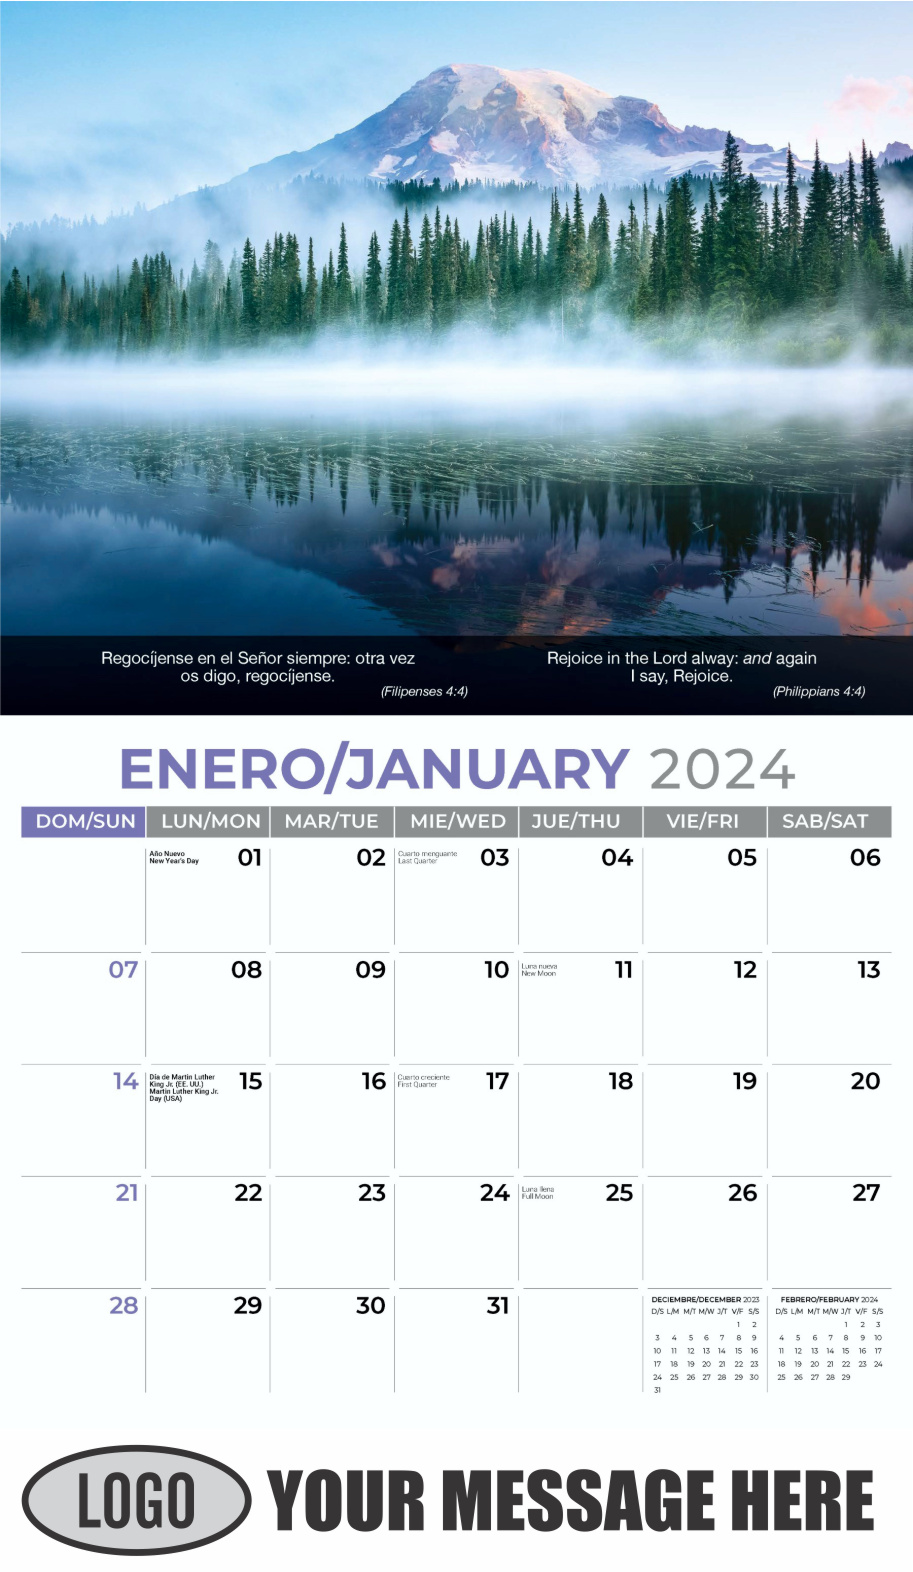 Faith Passages 2024 Bilingual Christian Faith Business Promotional Calendar - January